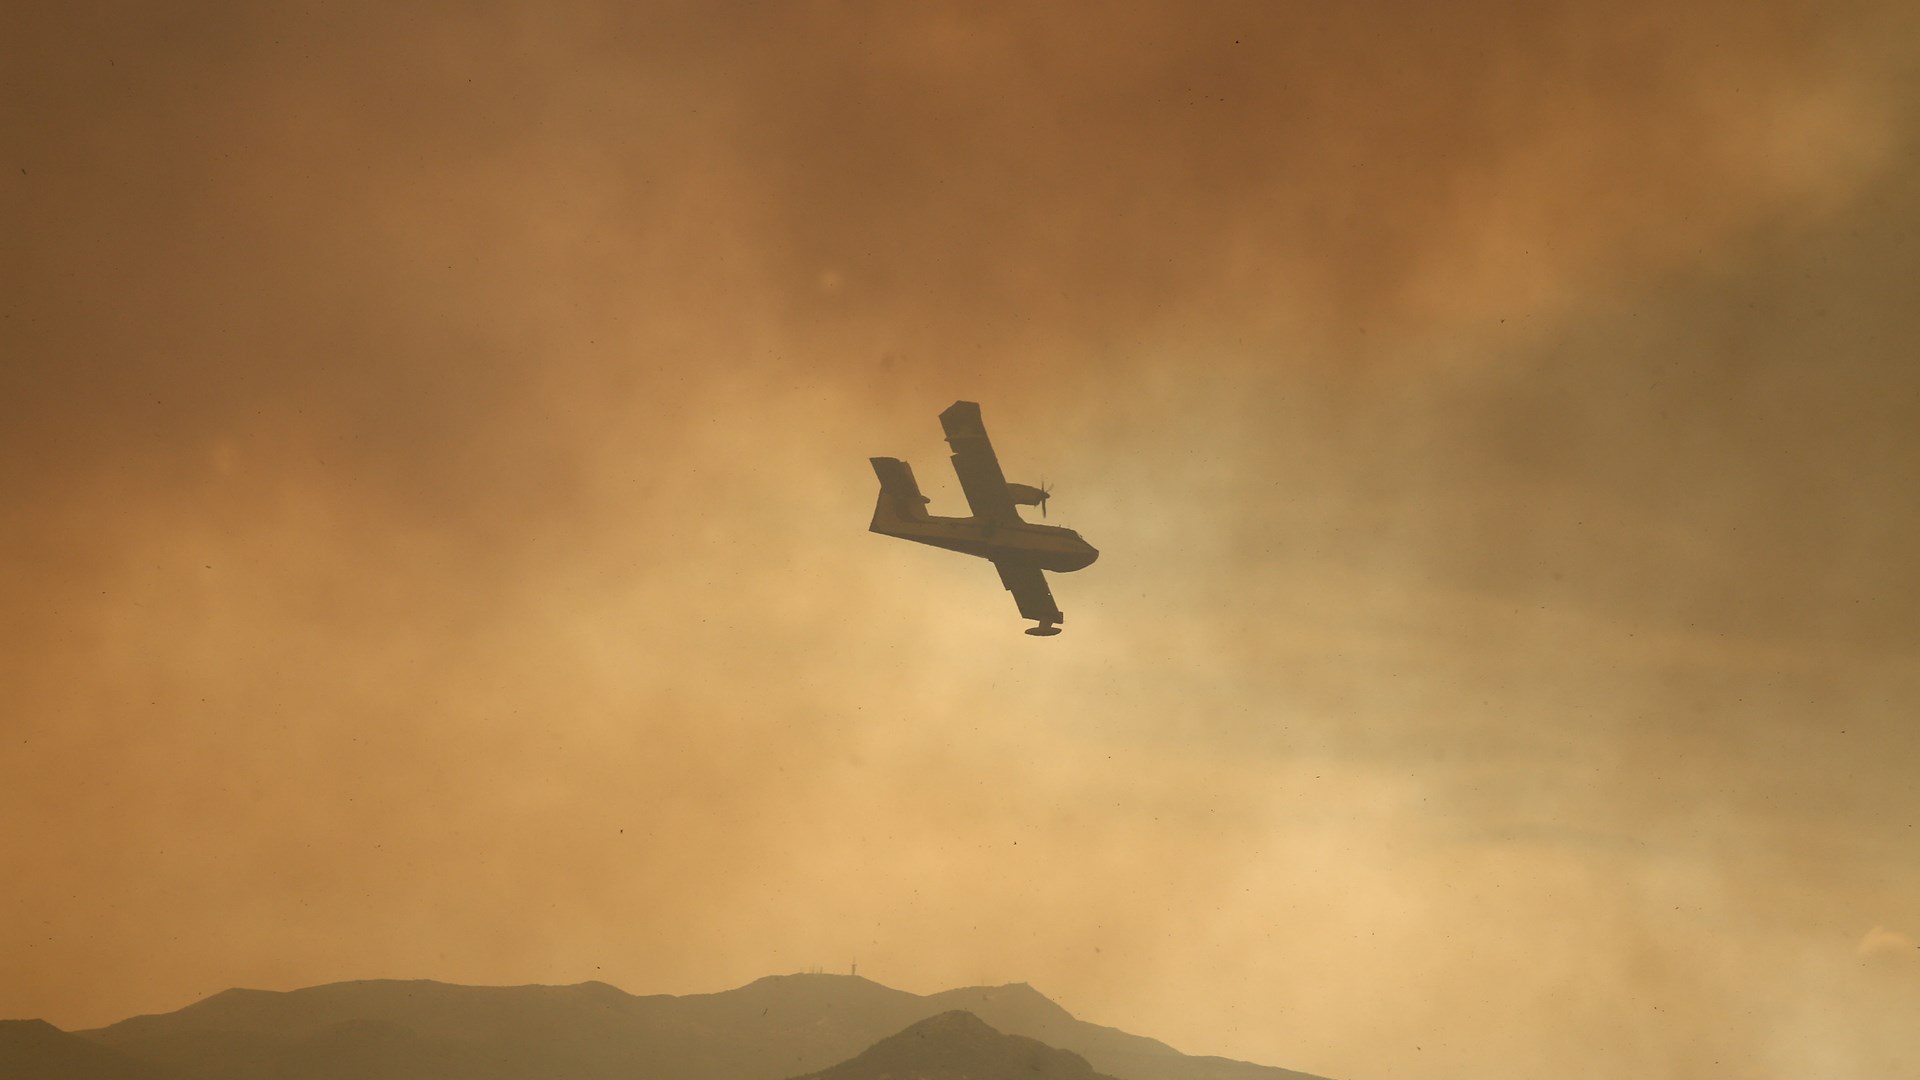 Σε δύο μέτωπα καίει η φωτιά στην Ανάληψη Αμαλιάδας – Ξεκίνησαν οι πτήσεις εναέριων πυροσβεστικών μέσων